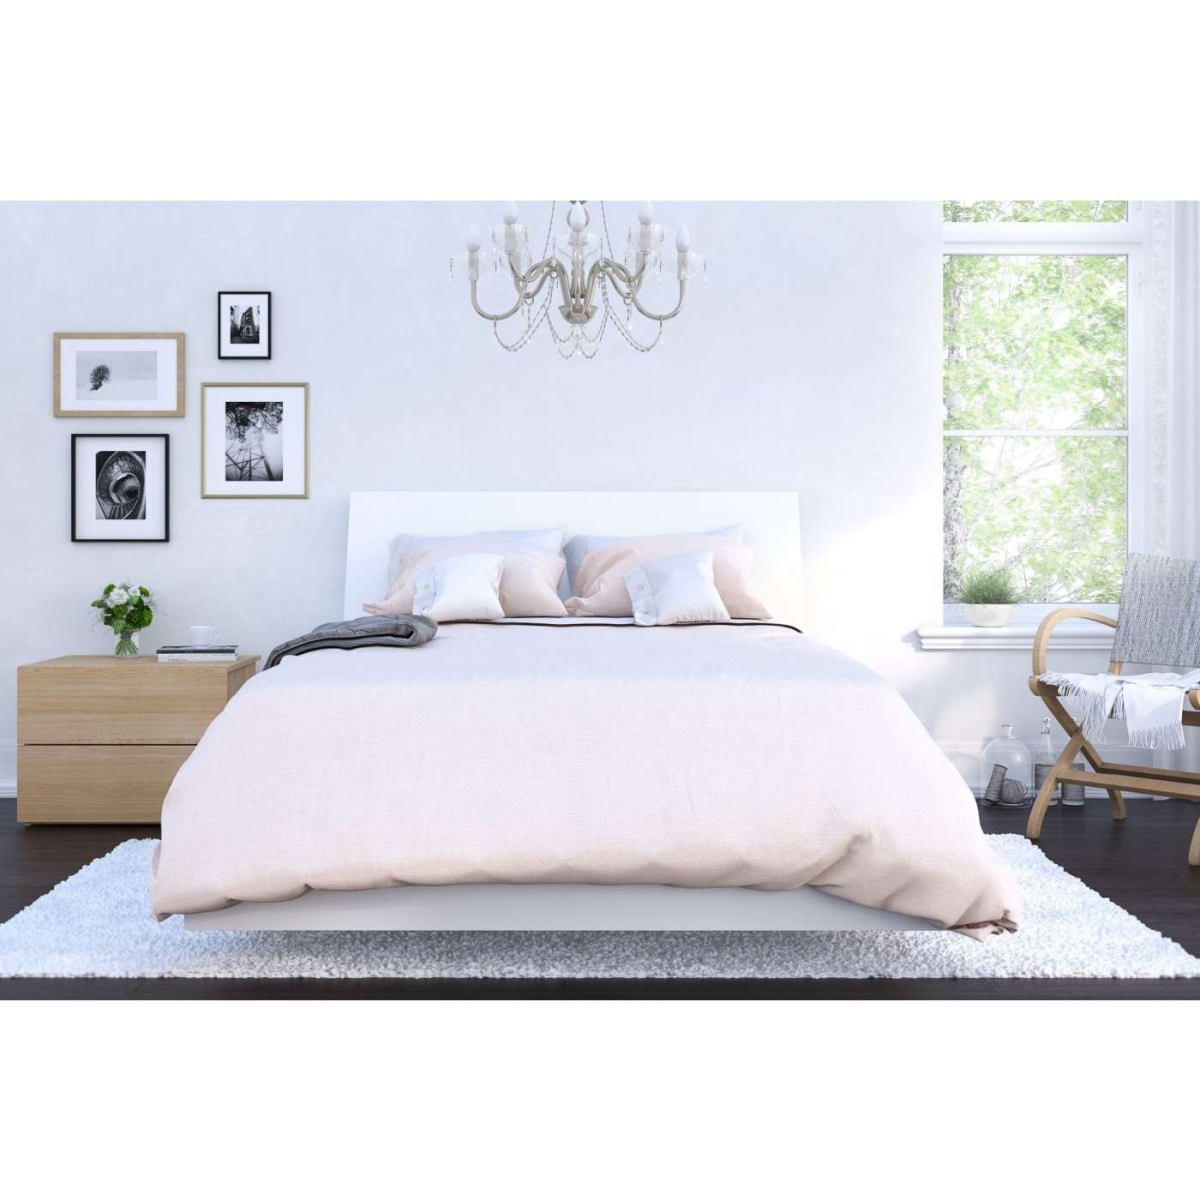 400827 Esker Bedroom Set, Natural Maple & White - Full Size